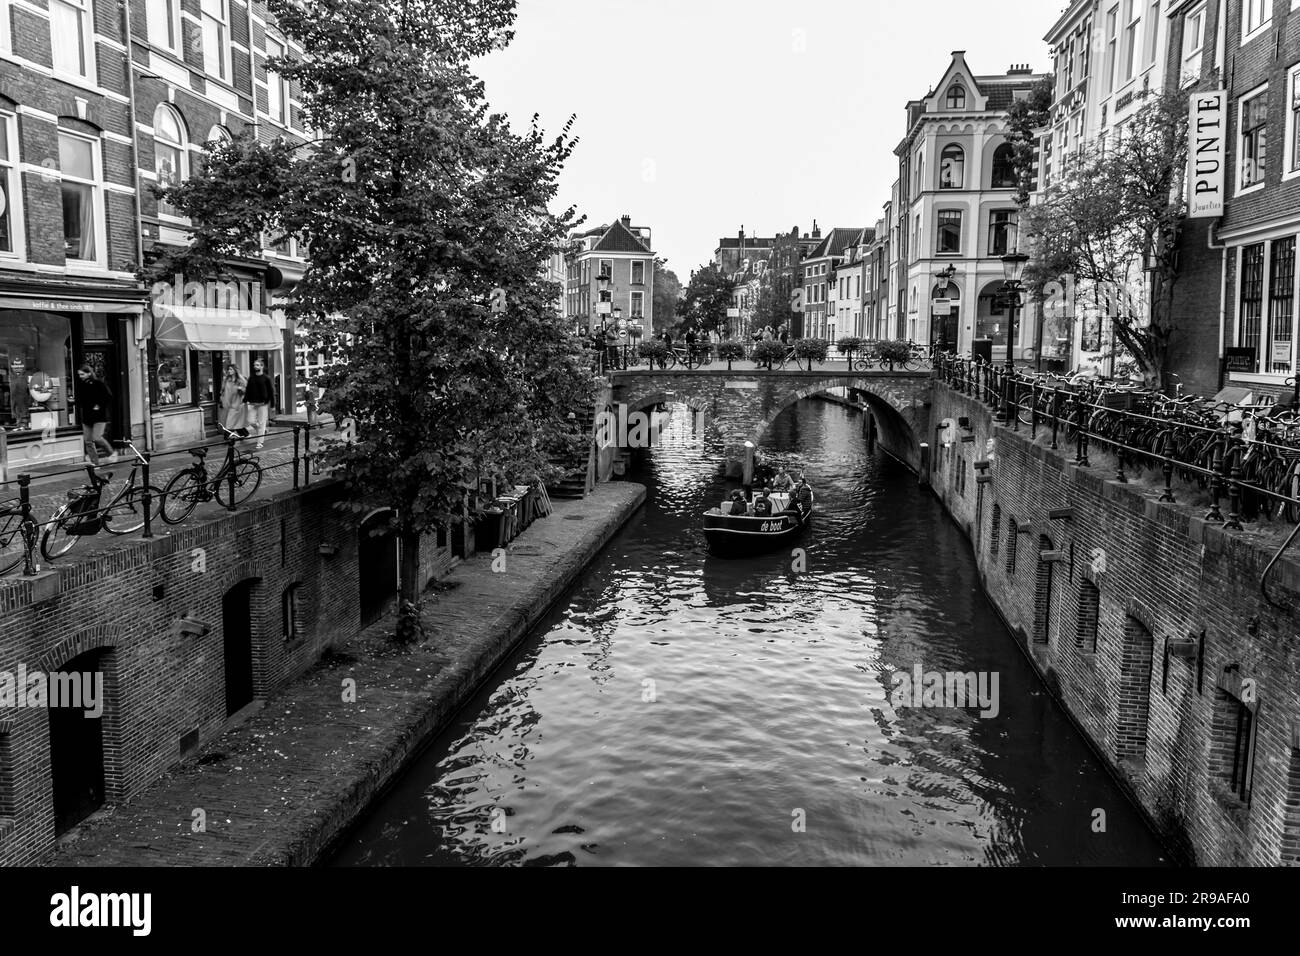 Utrecht, NL - 9. Okt 2021: Traditionelle holländische Gebäude und Blick auf die schönen Kanäle der Stadt Utrecht, Provinz Utrecht in den Niederlanden Stockfoto